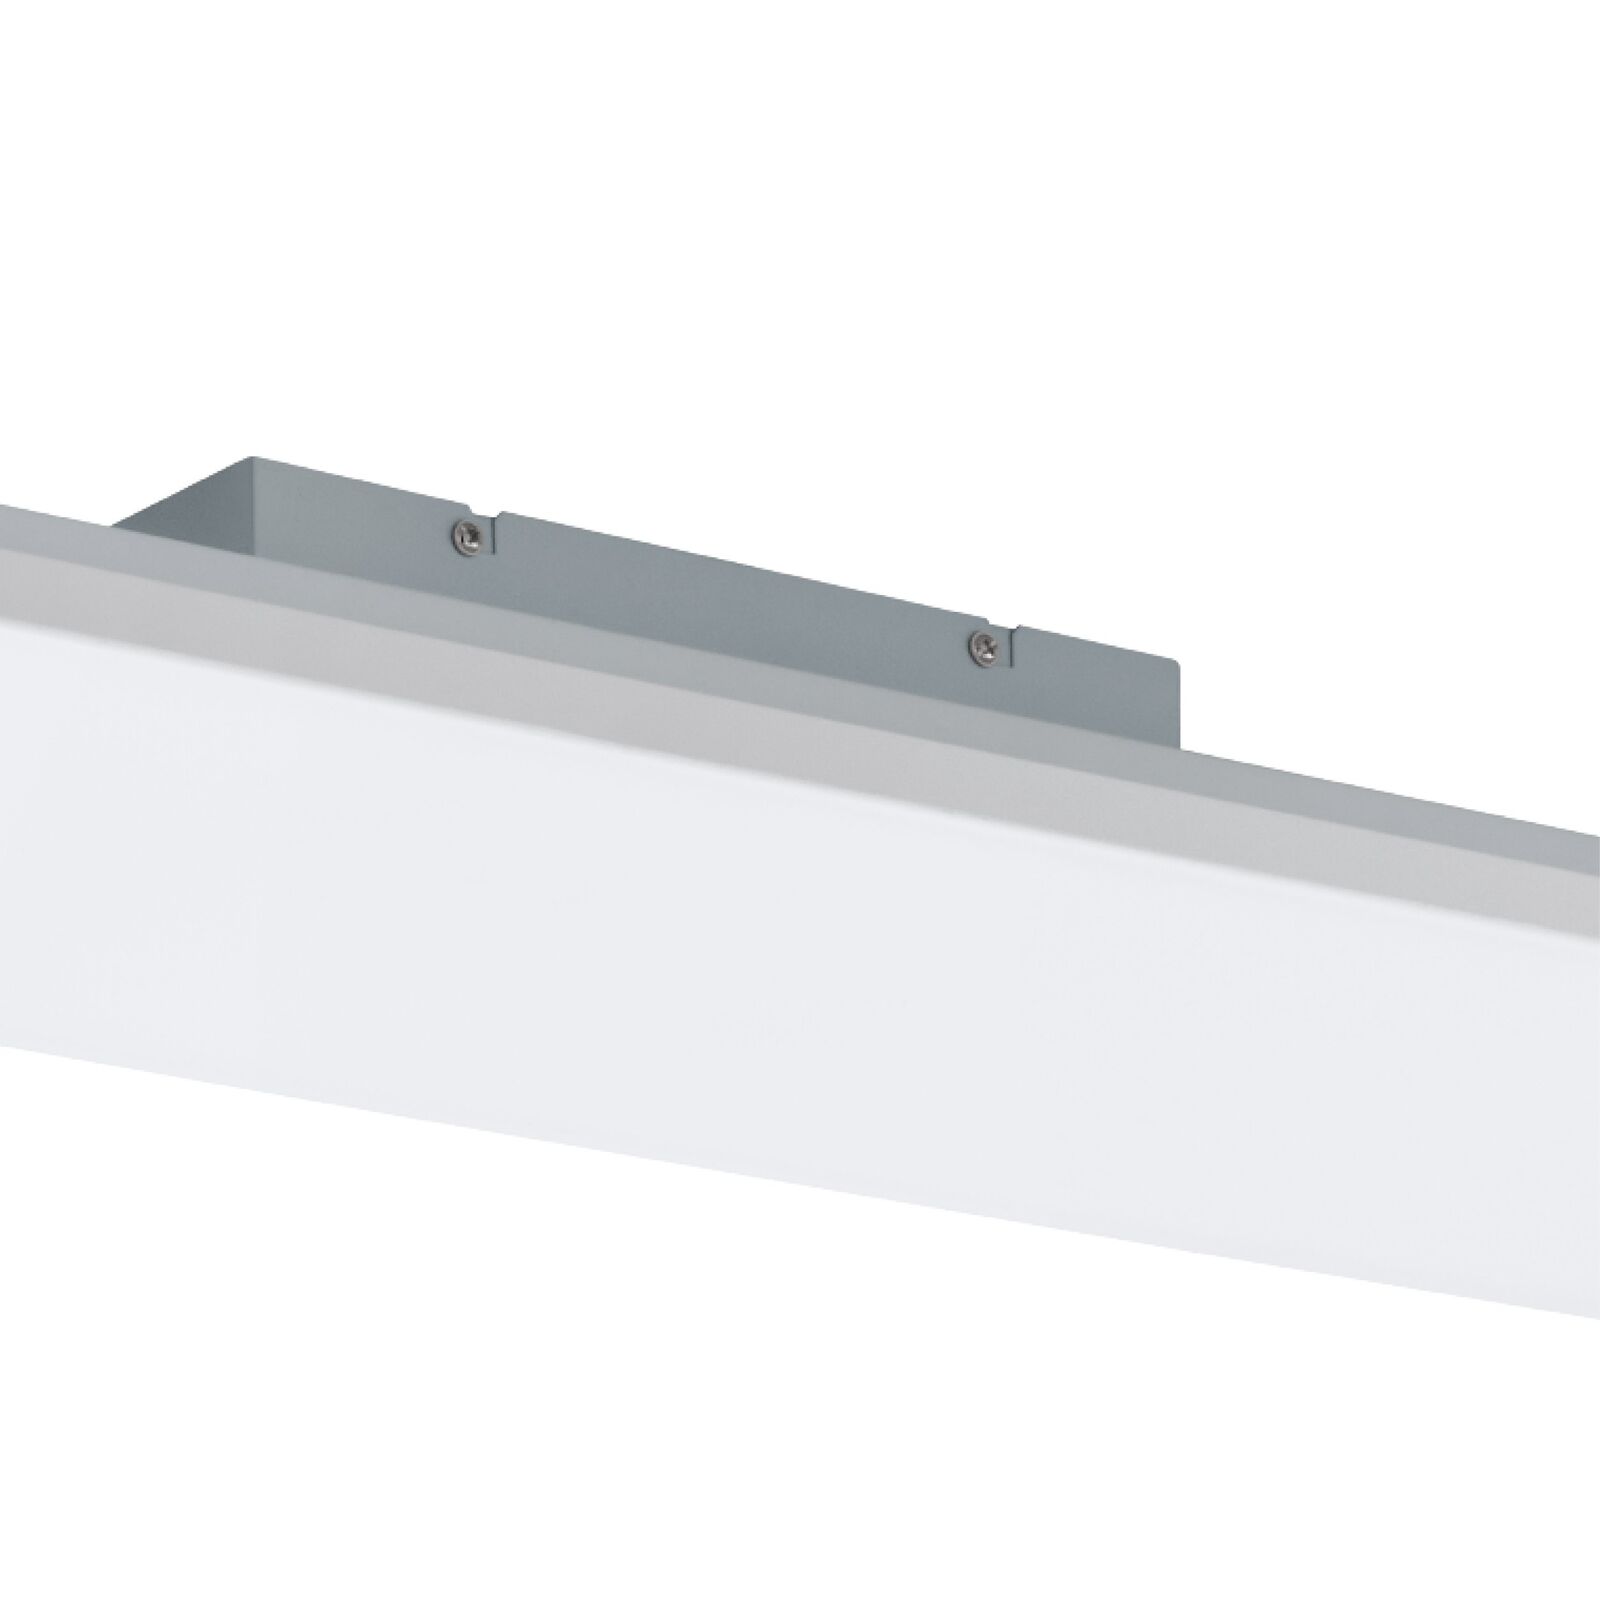 LED Panel Deckenlampe für Büro und Küche Deckenleuchte Weiß 100x24 cm